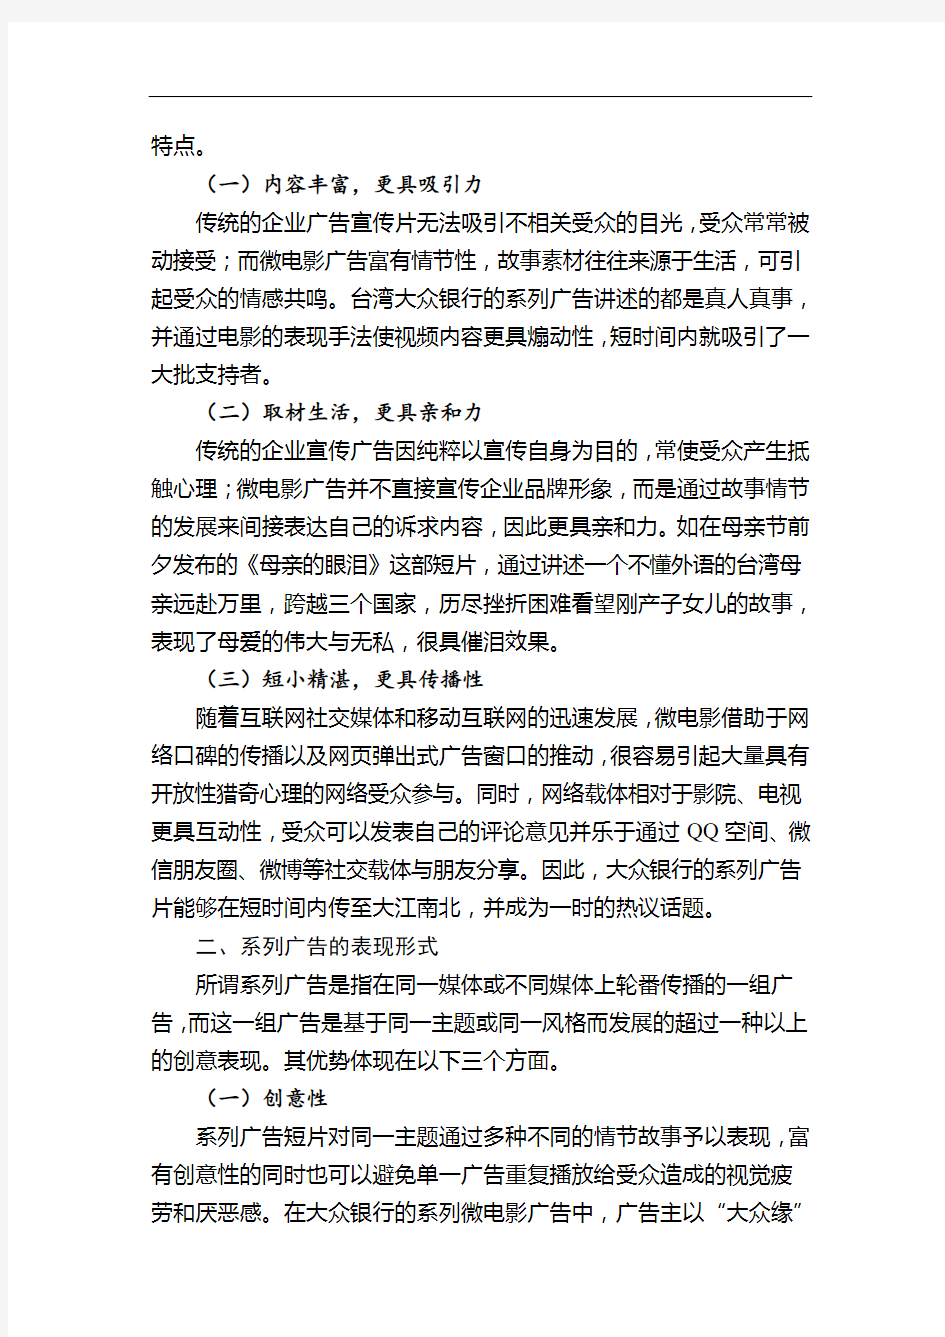 推荐-台湾大众银行的企业形象广告策略分析 精品